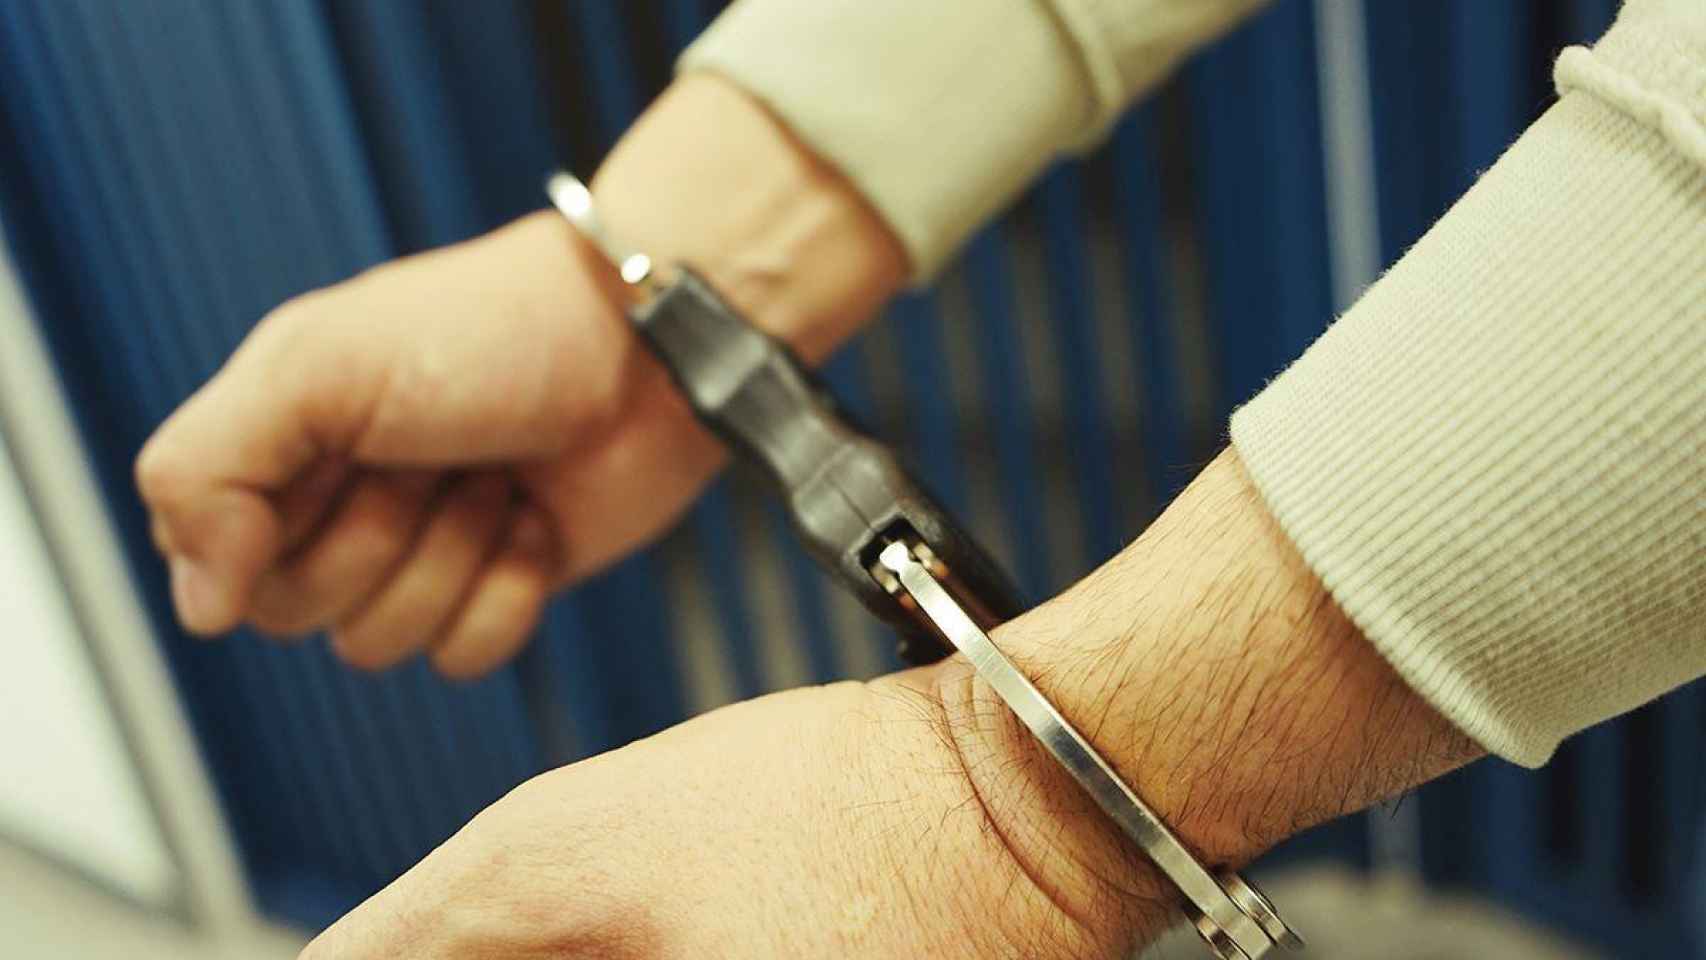 Un detenido es esposado antes de ir a prisión / MOSSOS